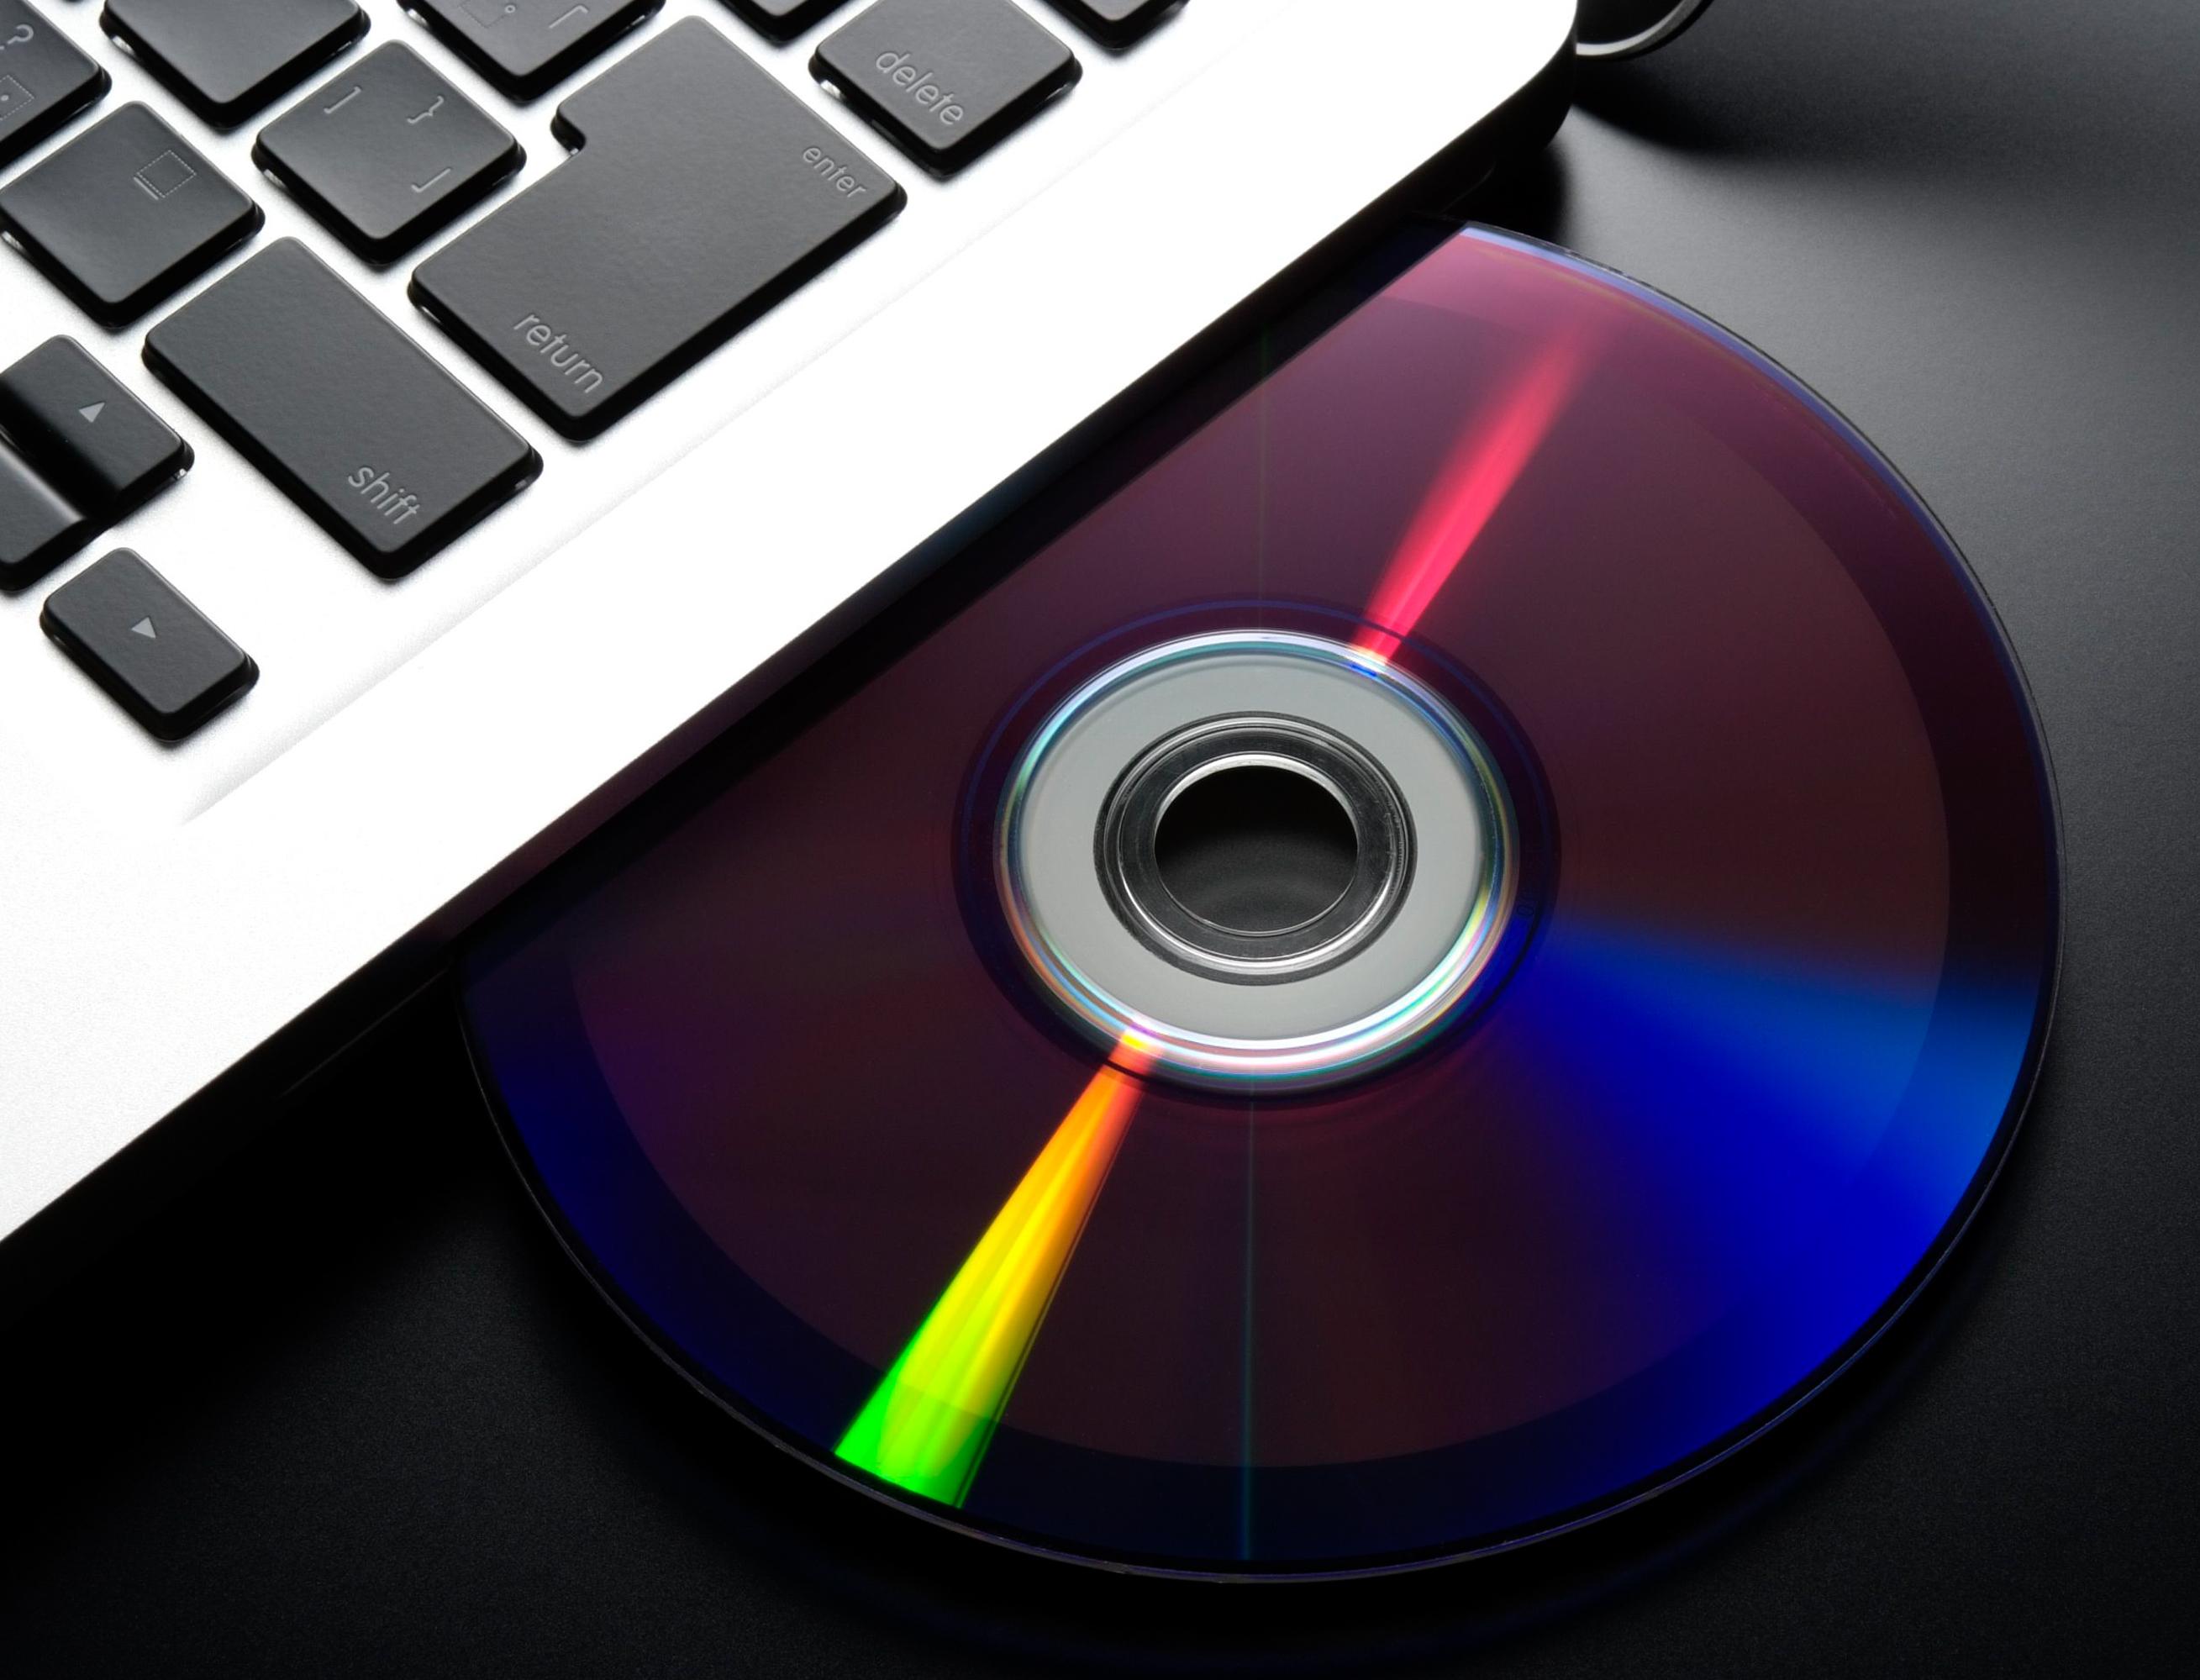 М.Видео-Эльдорадо обменяет старые флешки и CD-диски на скидку 50% в Облако Mail.ru